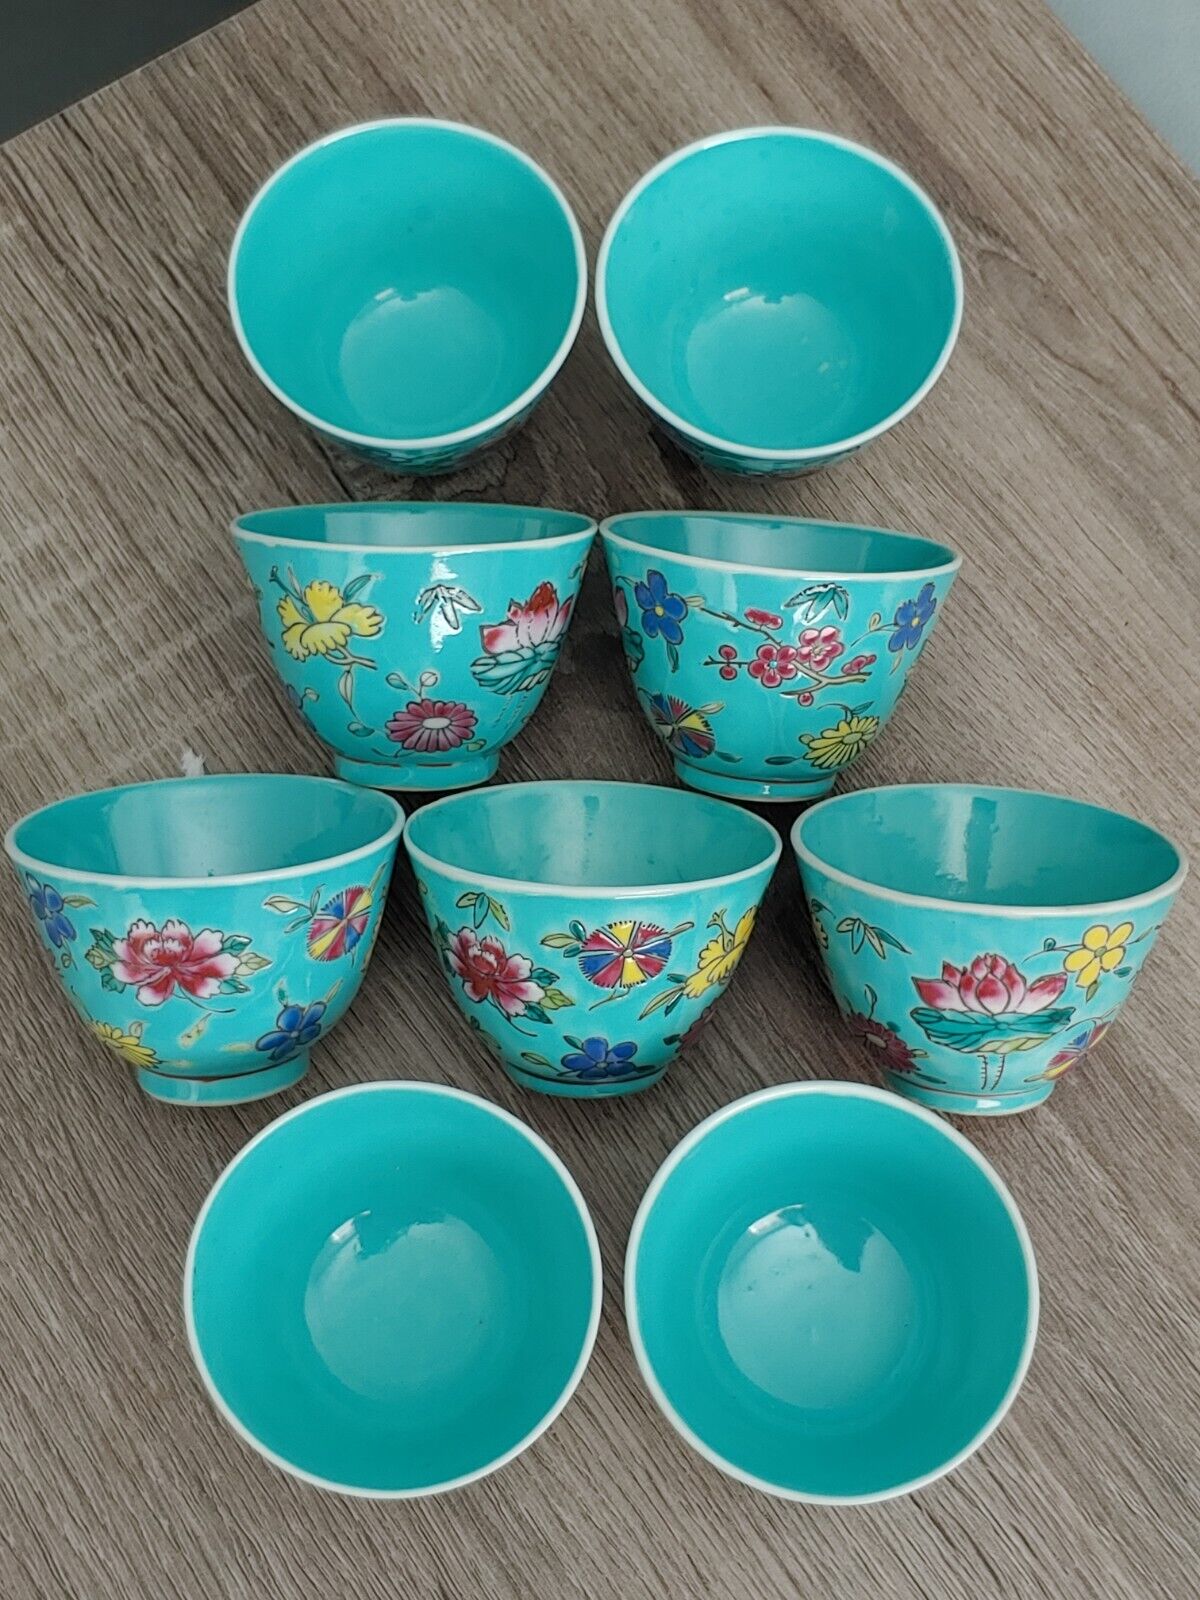 纯手工松石绿地粉彩花卉杯 Antique China Hong Kong Famille Rose Porcelain Painted Artwork Cups